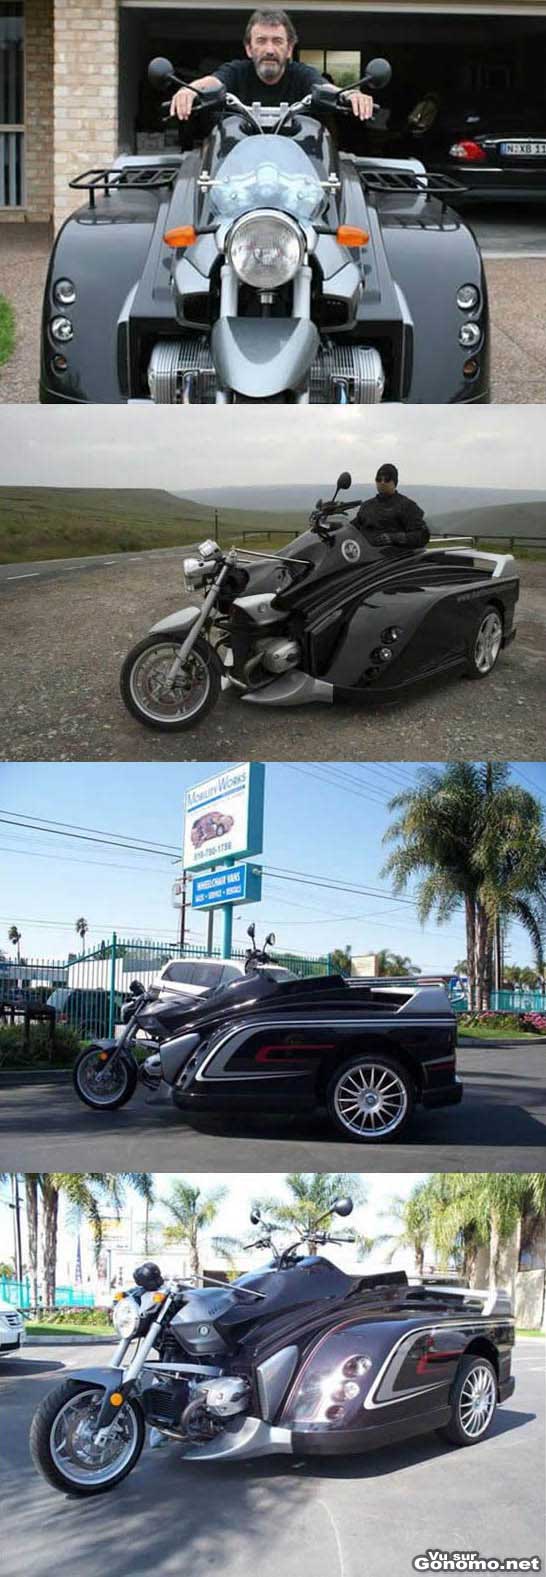 Une moto custom qui ne ressemble plus trop a une moto avec ses trois roues et sa grosse carrosserie